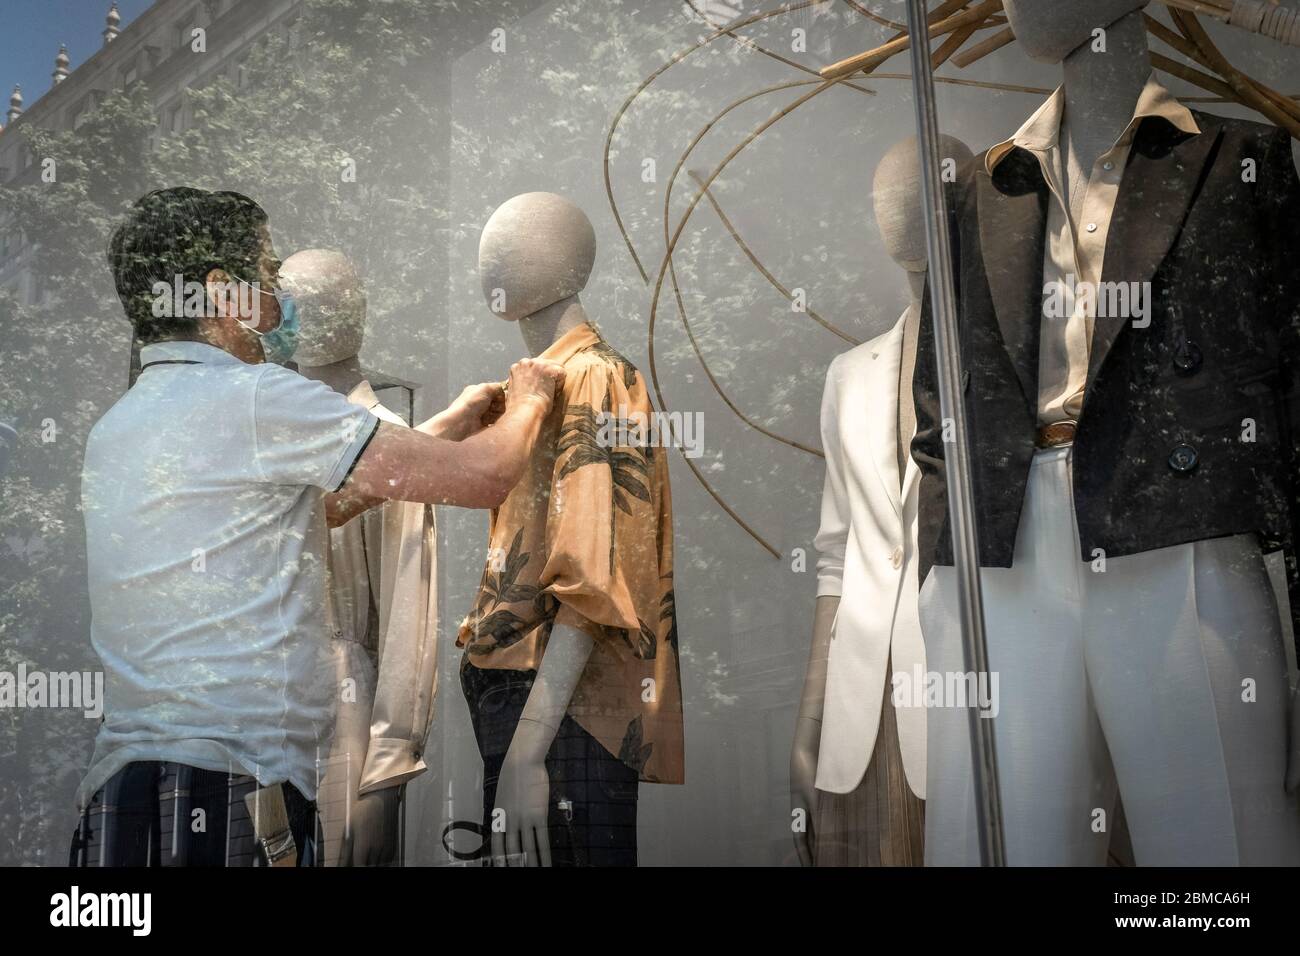 Un styliste de vitrine du groupe Zara / Inditex est vu fixer des vêtements  sur des mannequins pendant la phase zéro du Covid-19. Depuis le 04 mai, le  commerce local a été